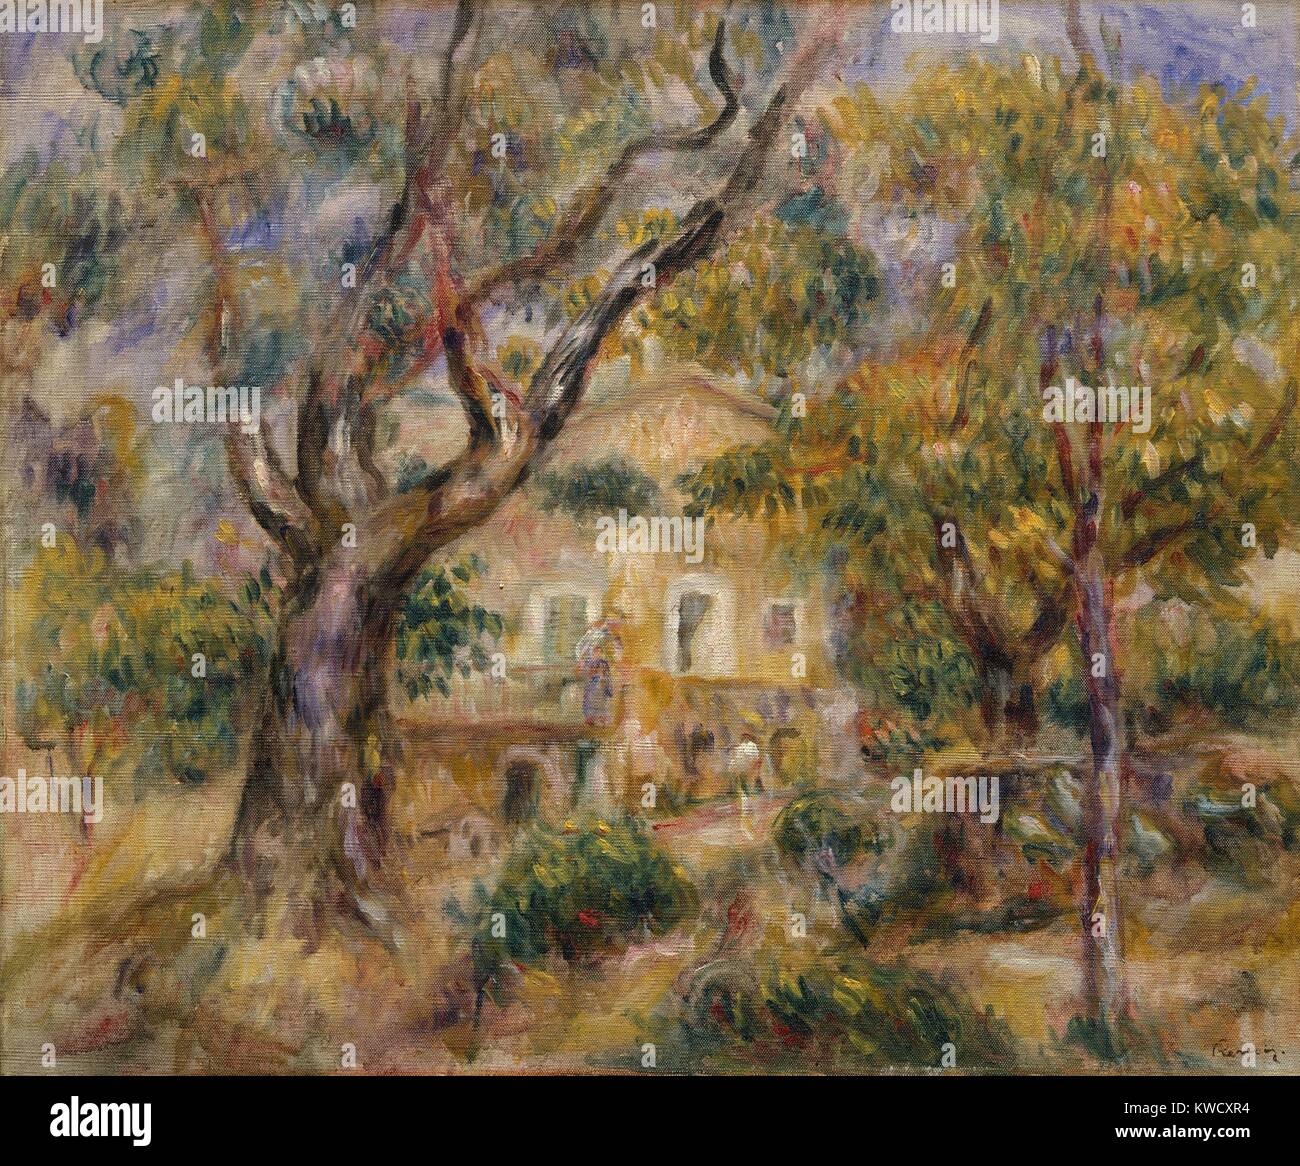 La Ferme des Collettes, Cagnes, par Auguste Renoir, 1908-14, la peinture à l'huile impressionnistes français. Renoir s'installe à la Méditerranée près de Nice en 1907 et peint sa ferme encadrée par des oliviers (BSLOC 2017 3 93) Banque D'Images